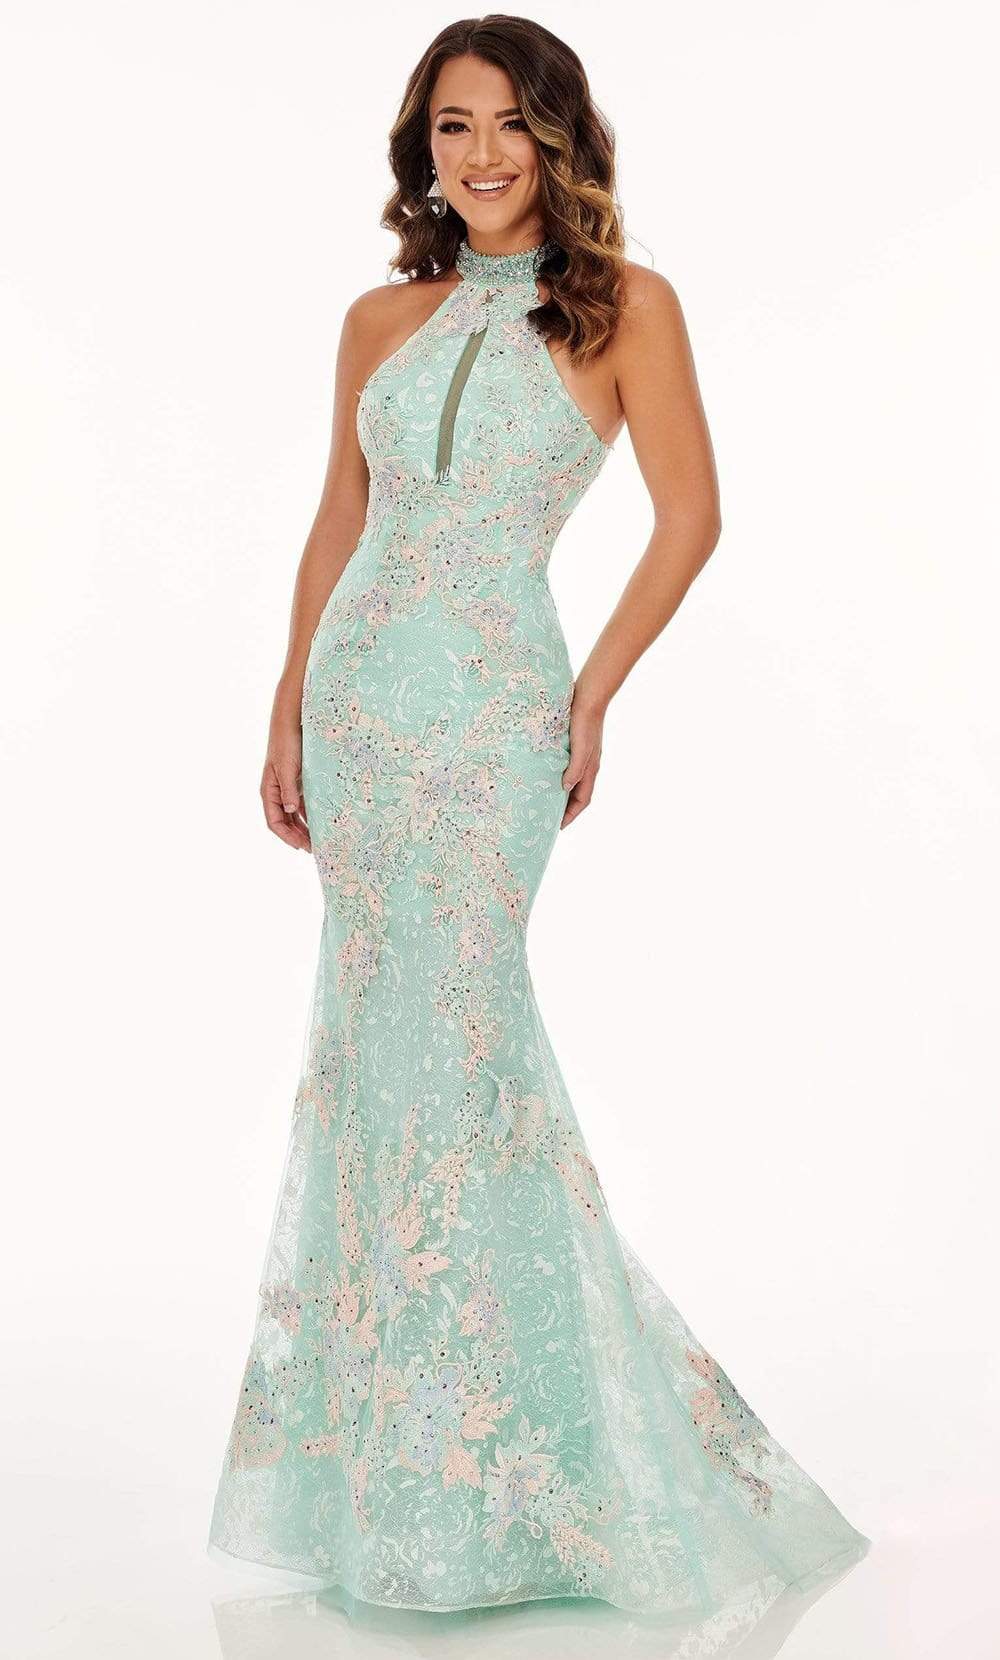 Rachel Allan - 70066 Lace Applique High Halter Trumpet Dress Prom Dresses 10 / Mint Multi